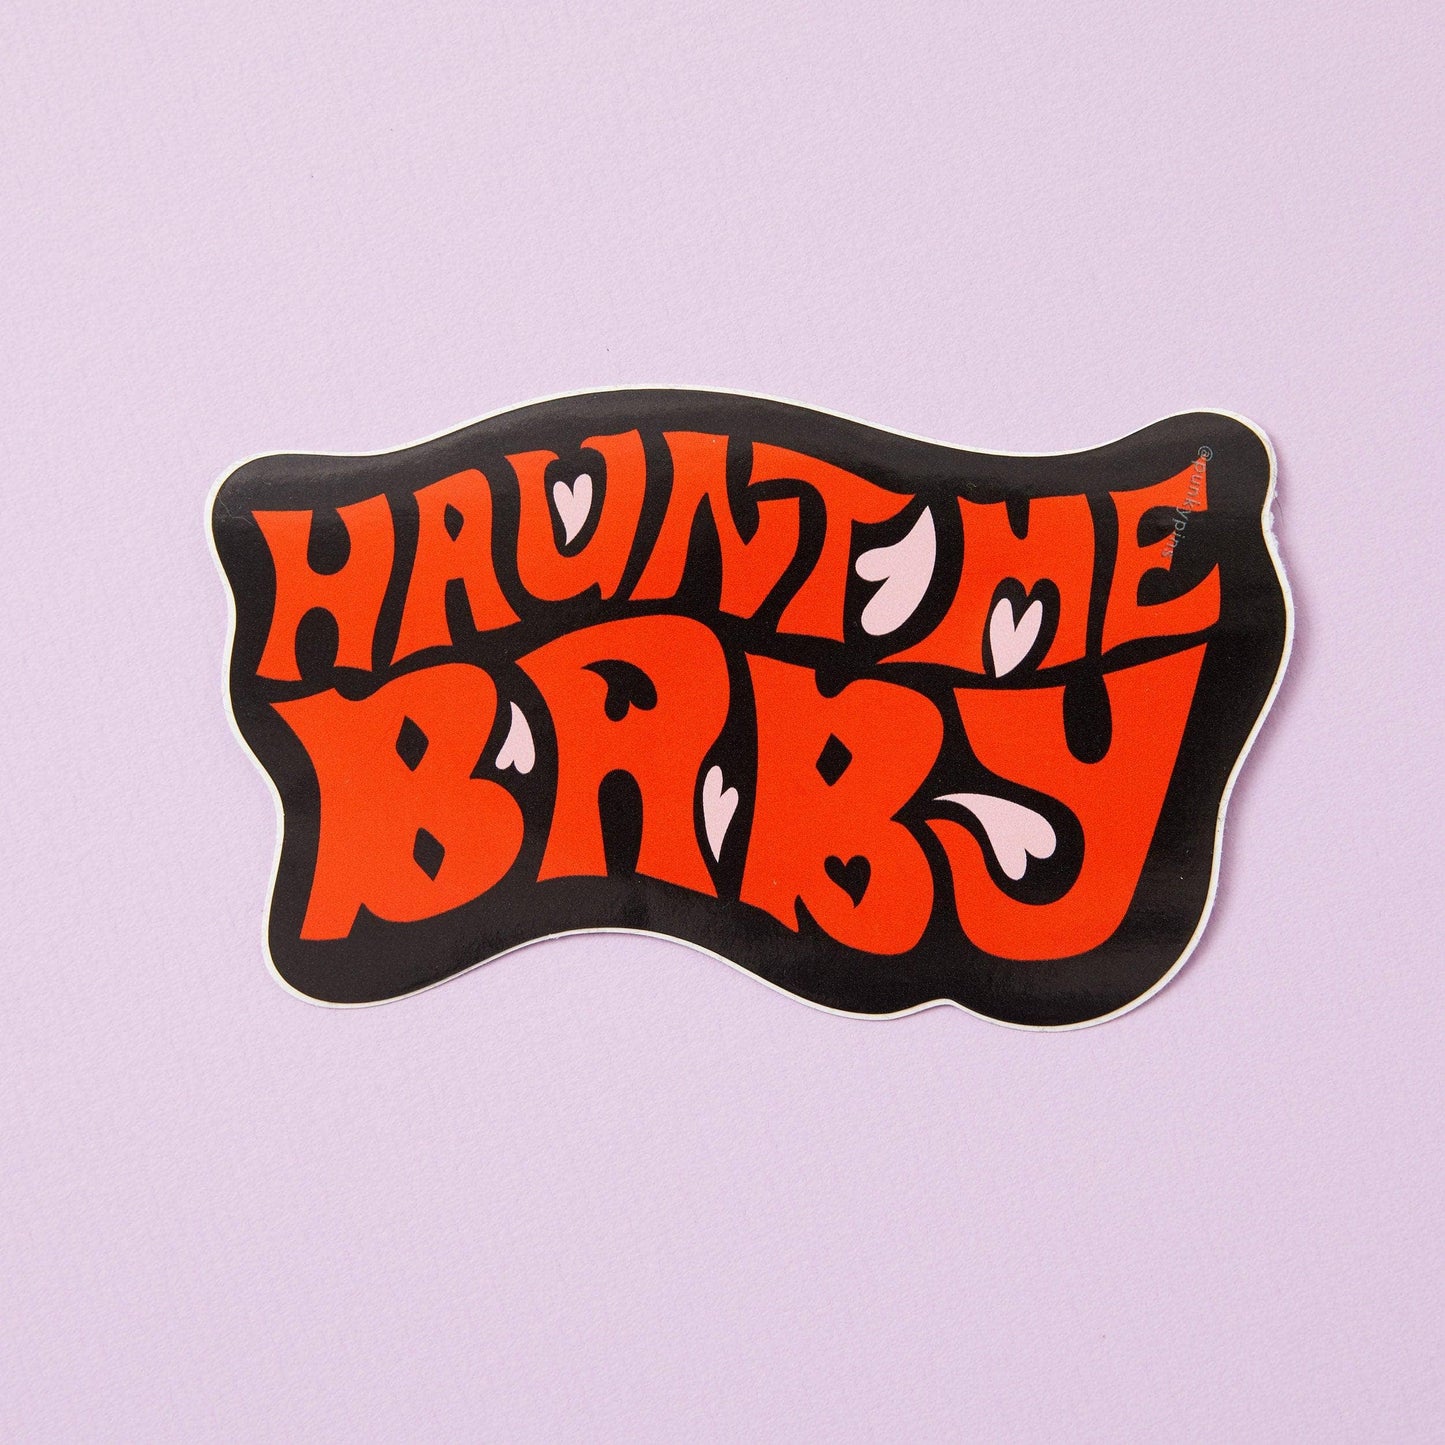 Punky Pins - Haunt Me Baby Vinyl Sticker